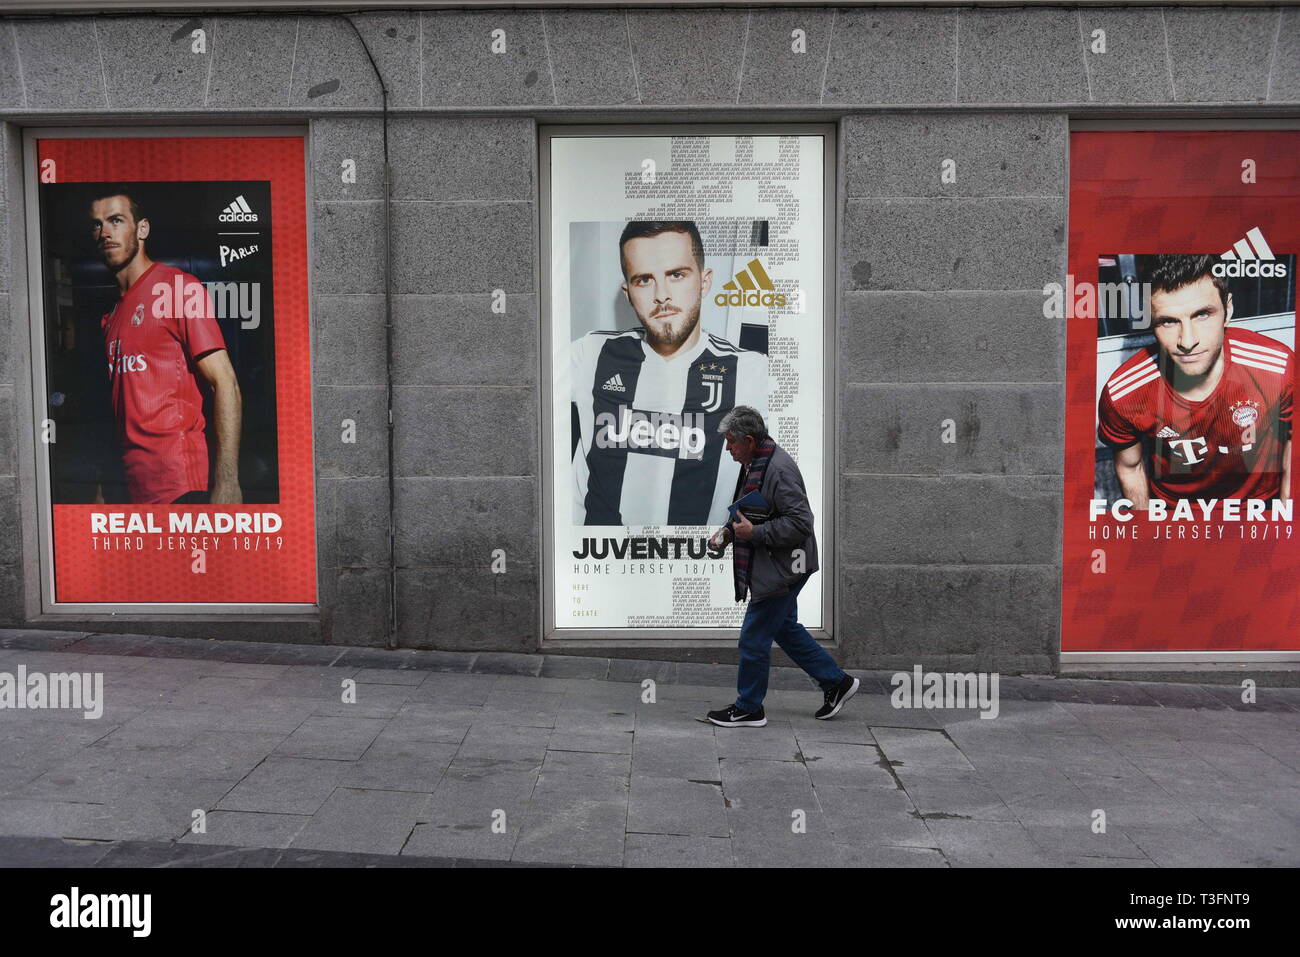 Madrid, Madrid, Espagne. Apr 9, 2019. Un homme vu marcher à côté d'une  publicité sur un adidas adidas store à Madrid. Crédit : John Milner  SOPA/Images/ZUMA/Alamy Fil Live News Photo Stock -